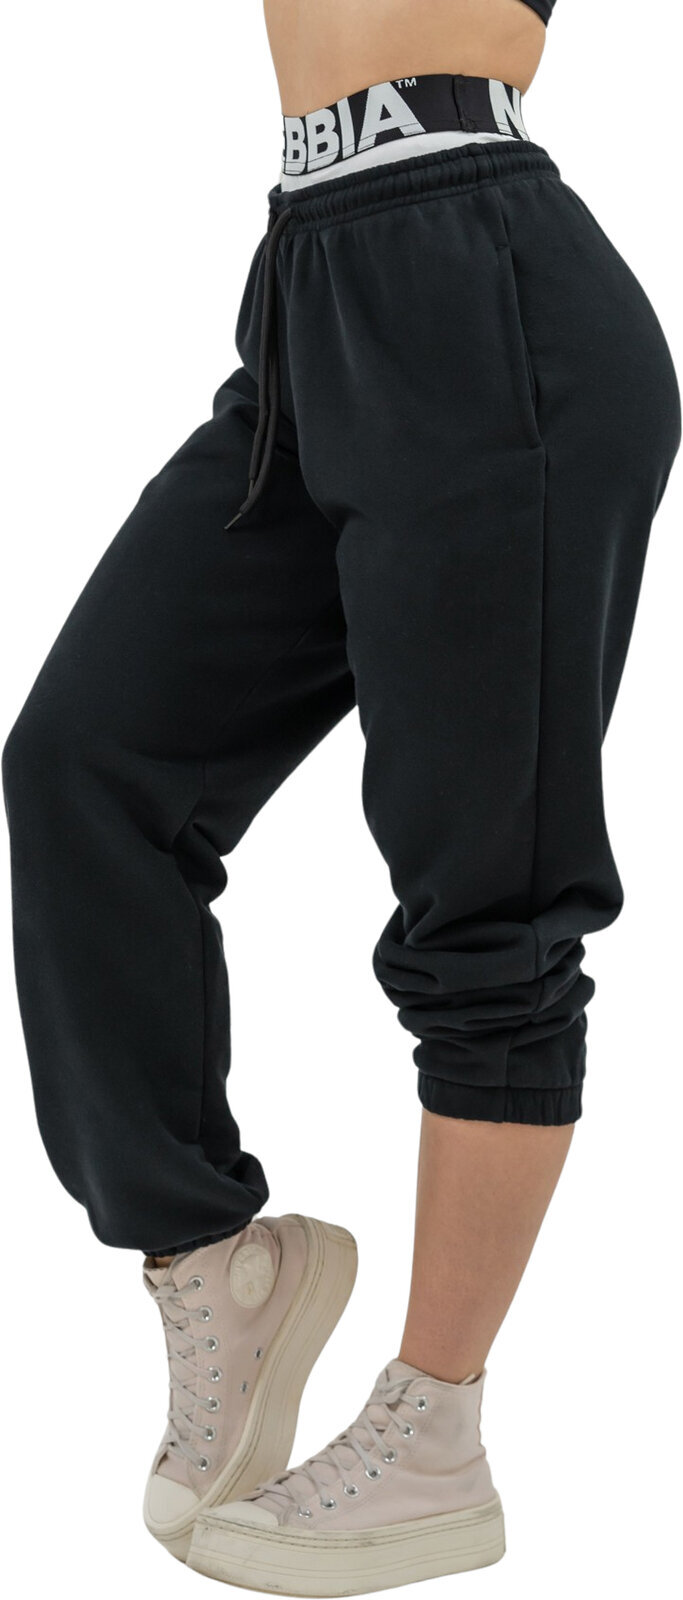 Fitness spodnie Nebbia Fitness Sweatpants Muscle Mommy Black S Fitness spodnie